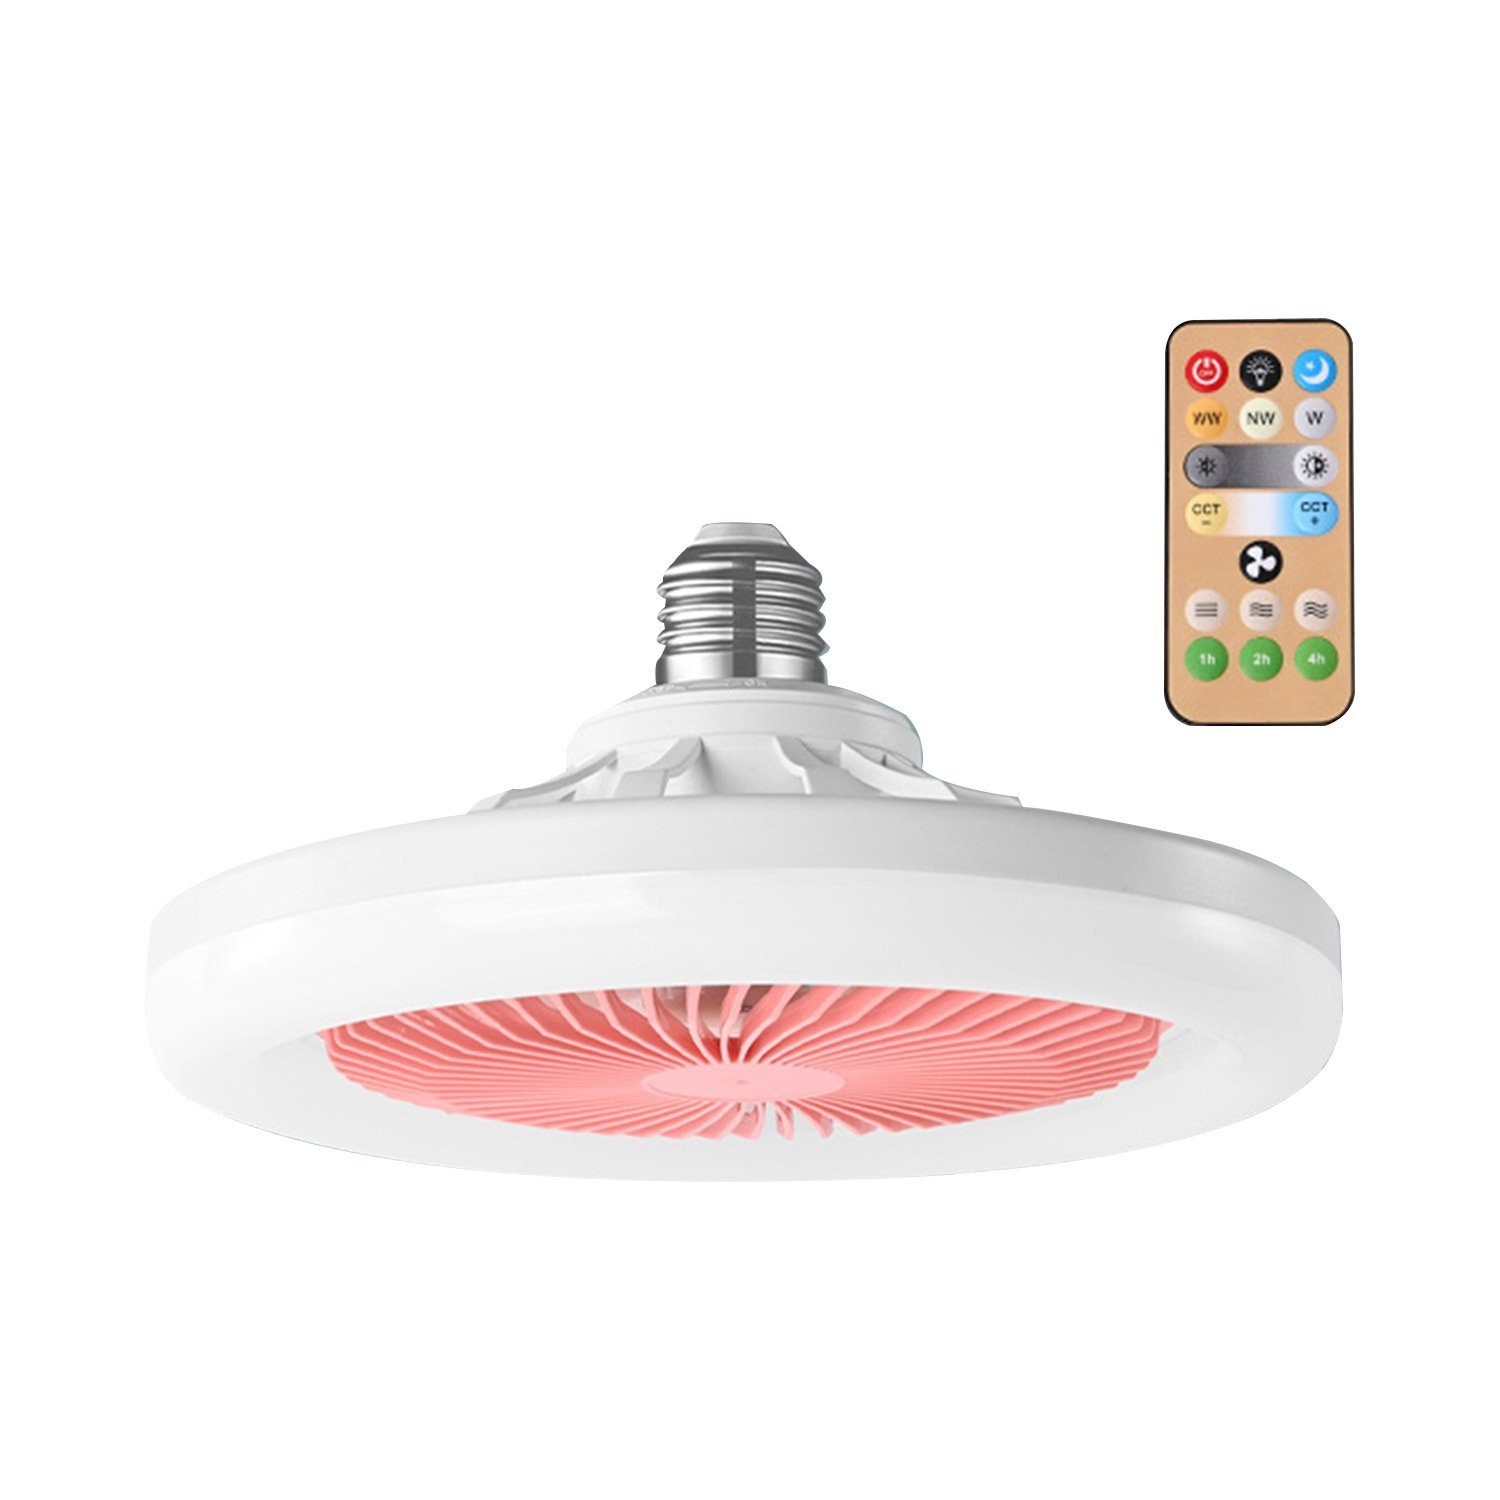 MAGICSHE Deckenventilator mit Lichtern und Fernbedienung, niedriges Profil, mit stufenloser Dimm-Beleuchtung, für Schlafzimmer, Küche Rosa